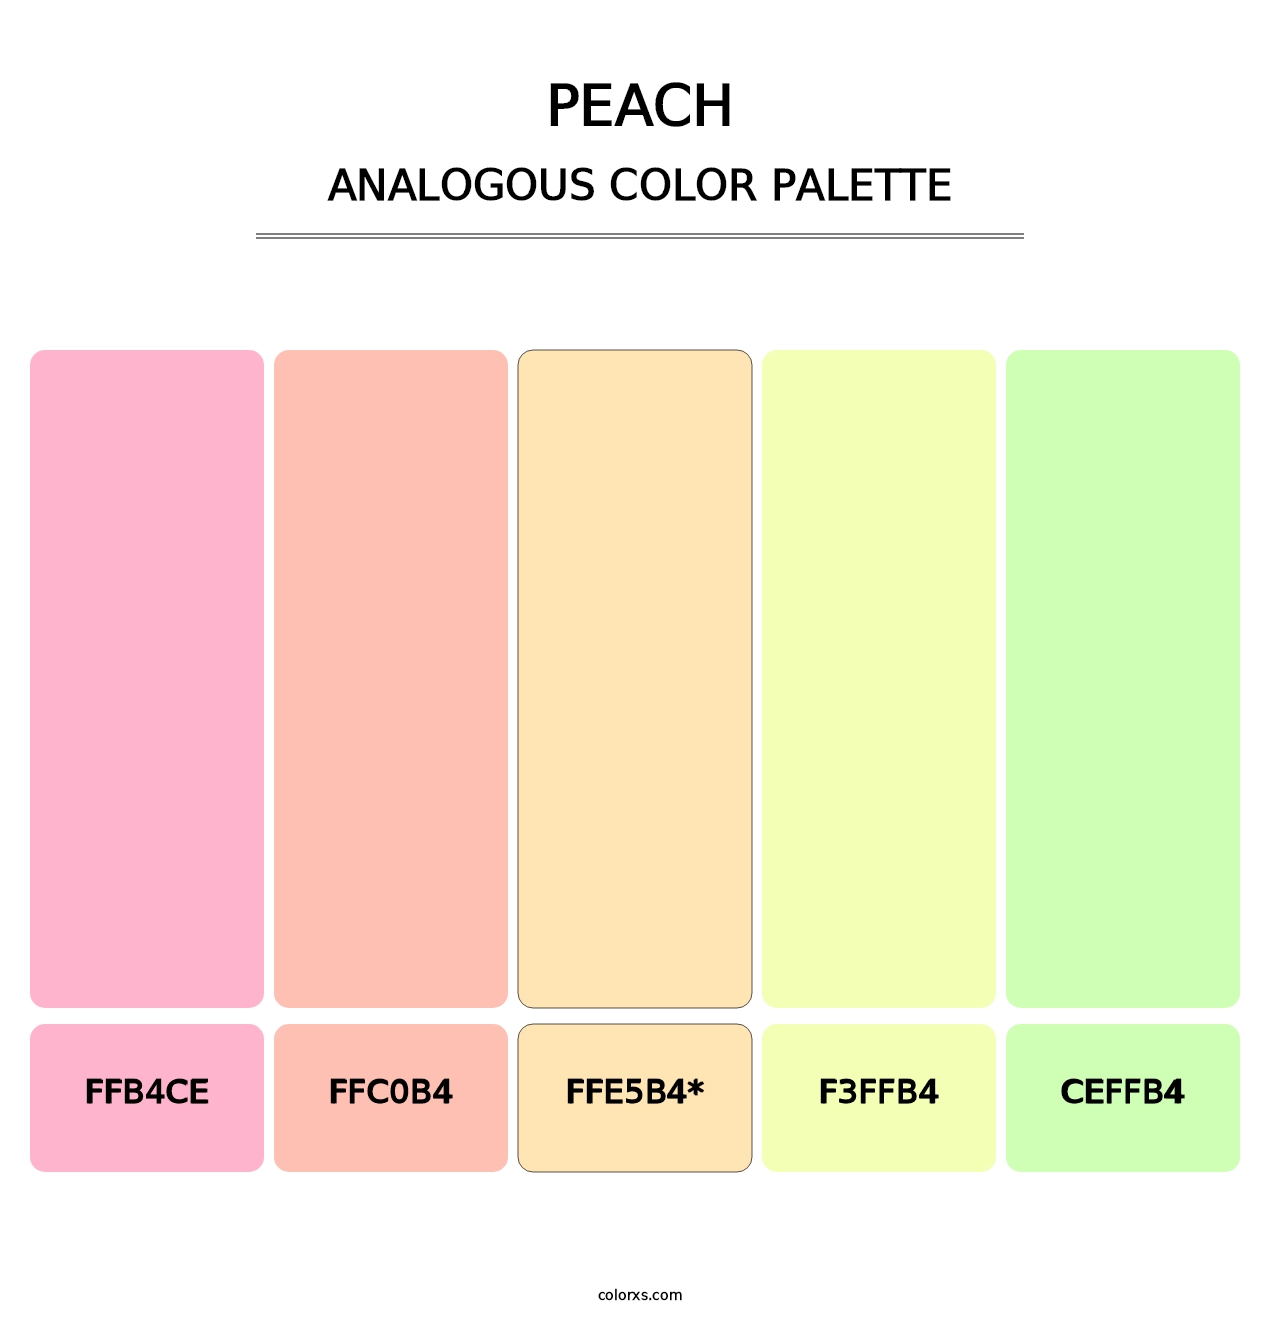 Peach - Analogous Color Palette